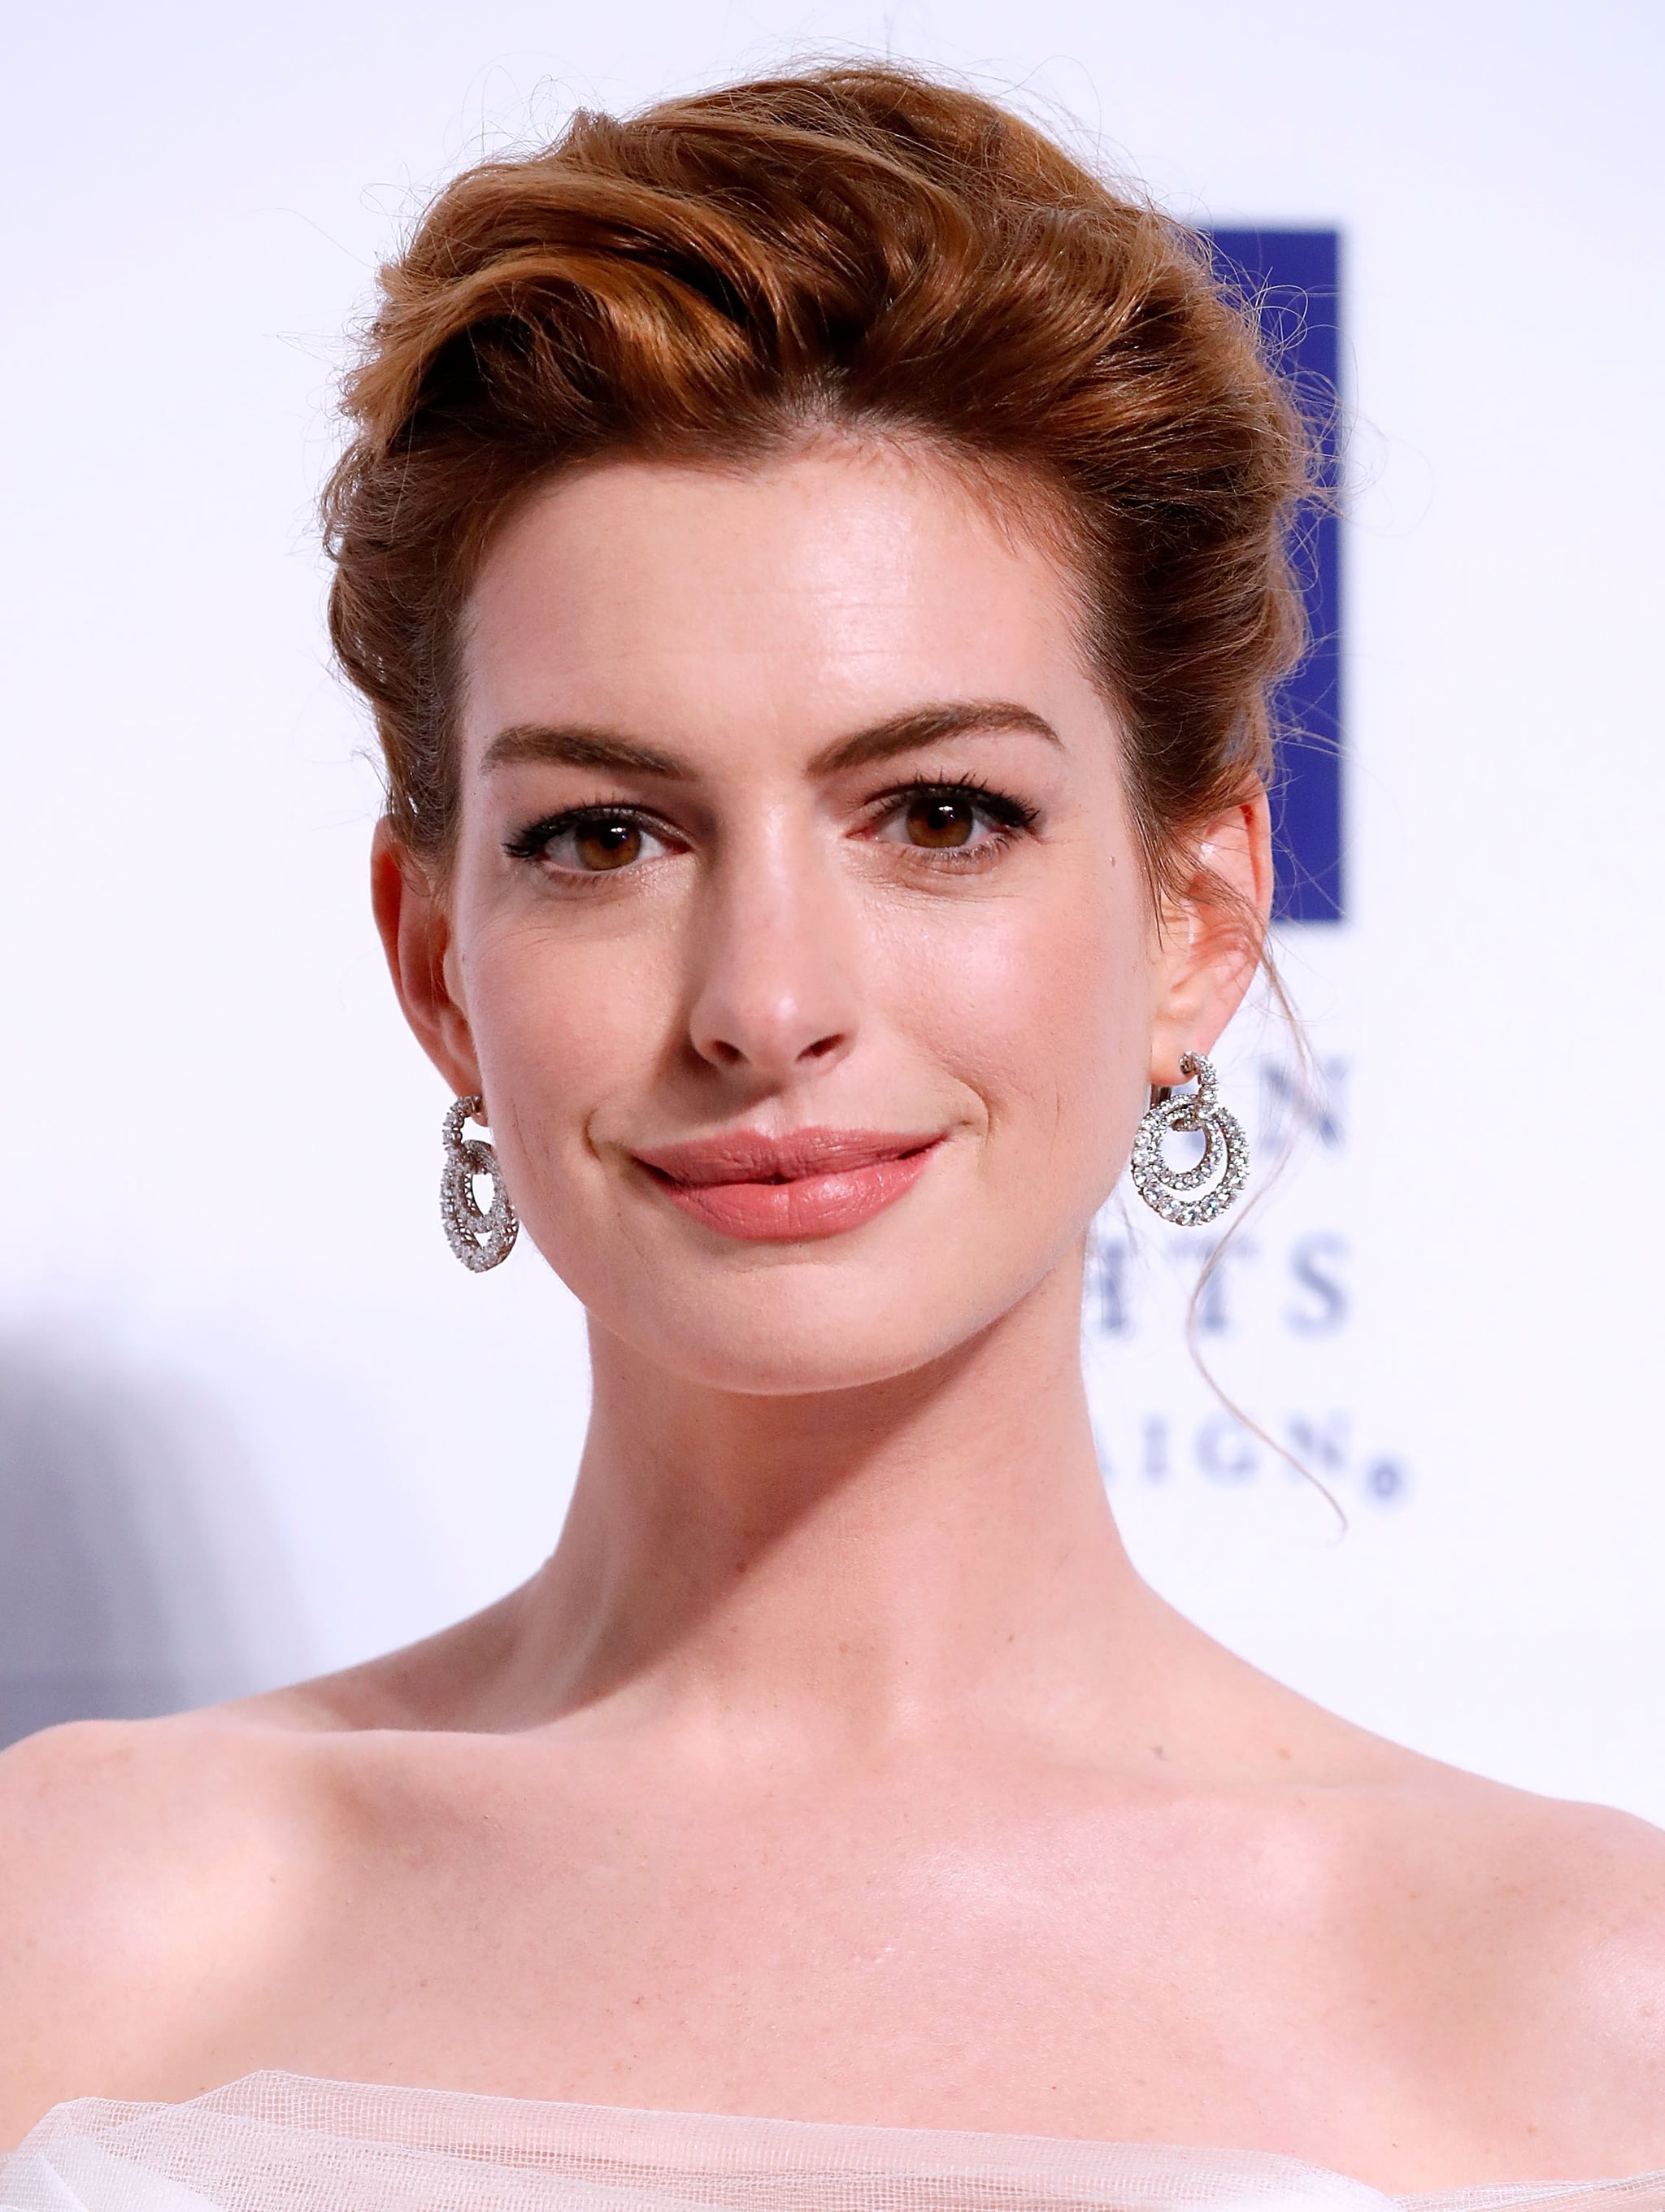 Anne Hathaway Best Beauty Looks | POPSUGAR Beauty